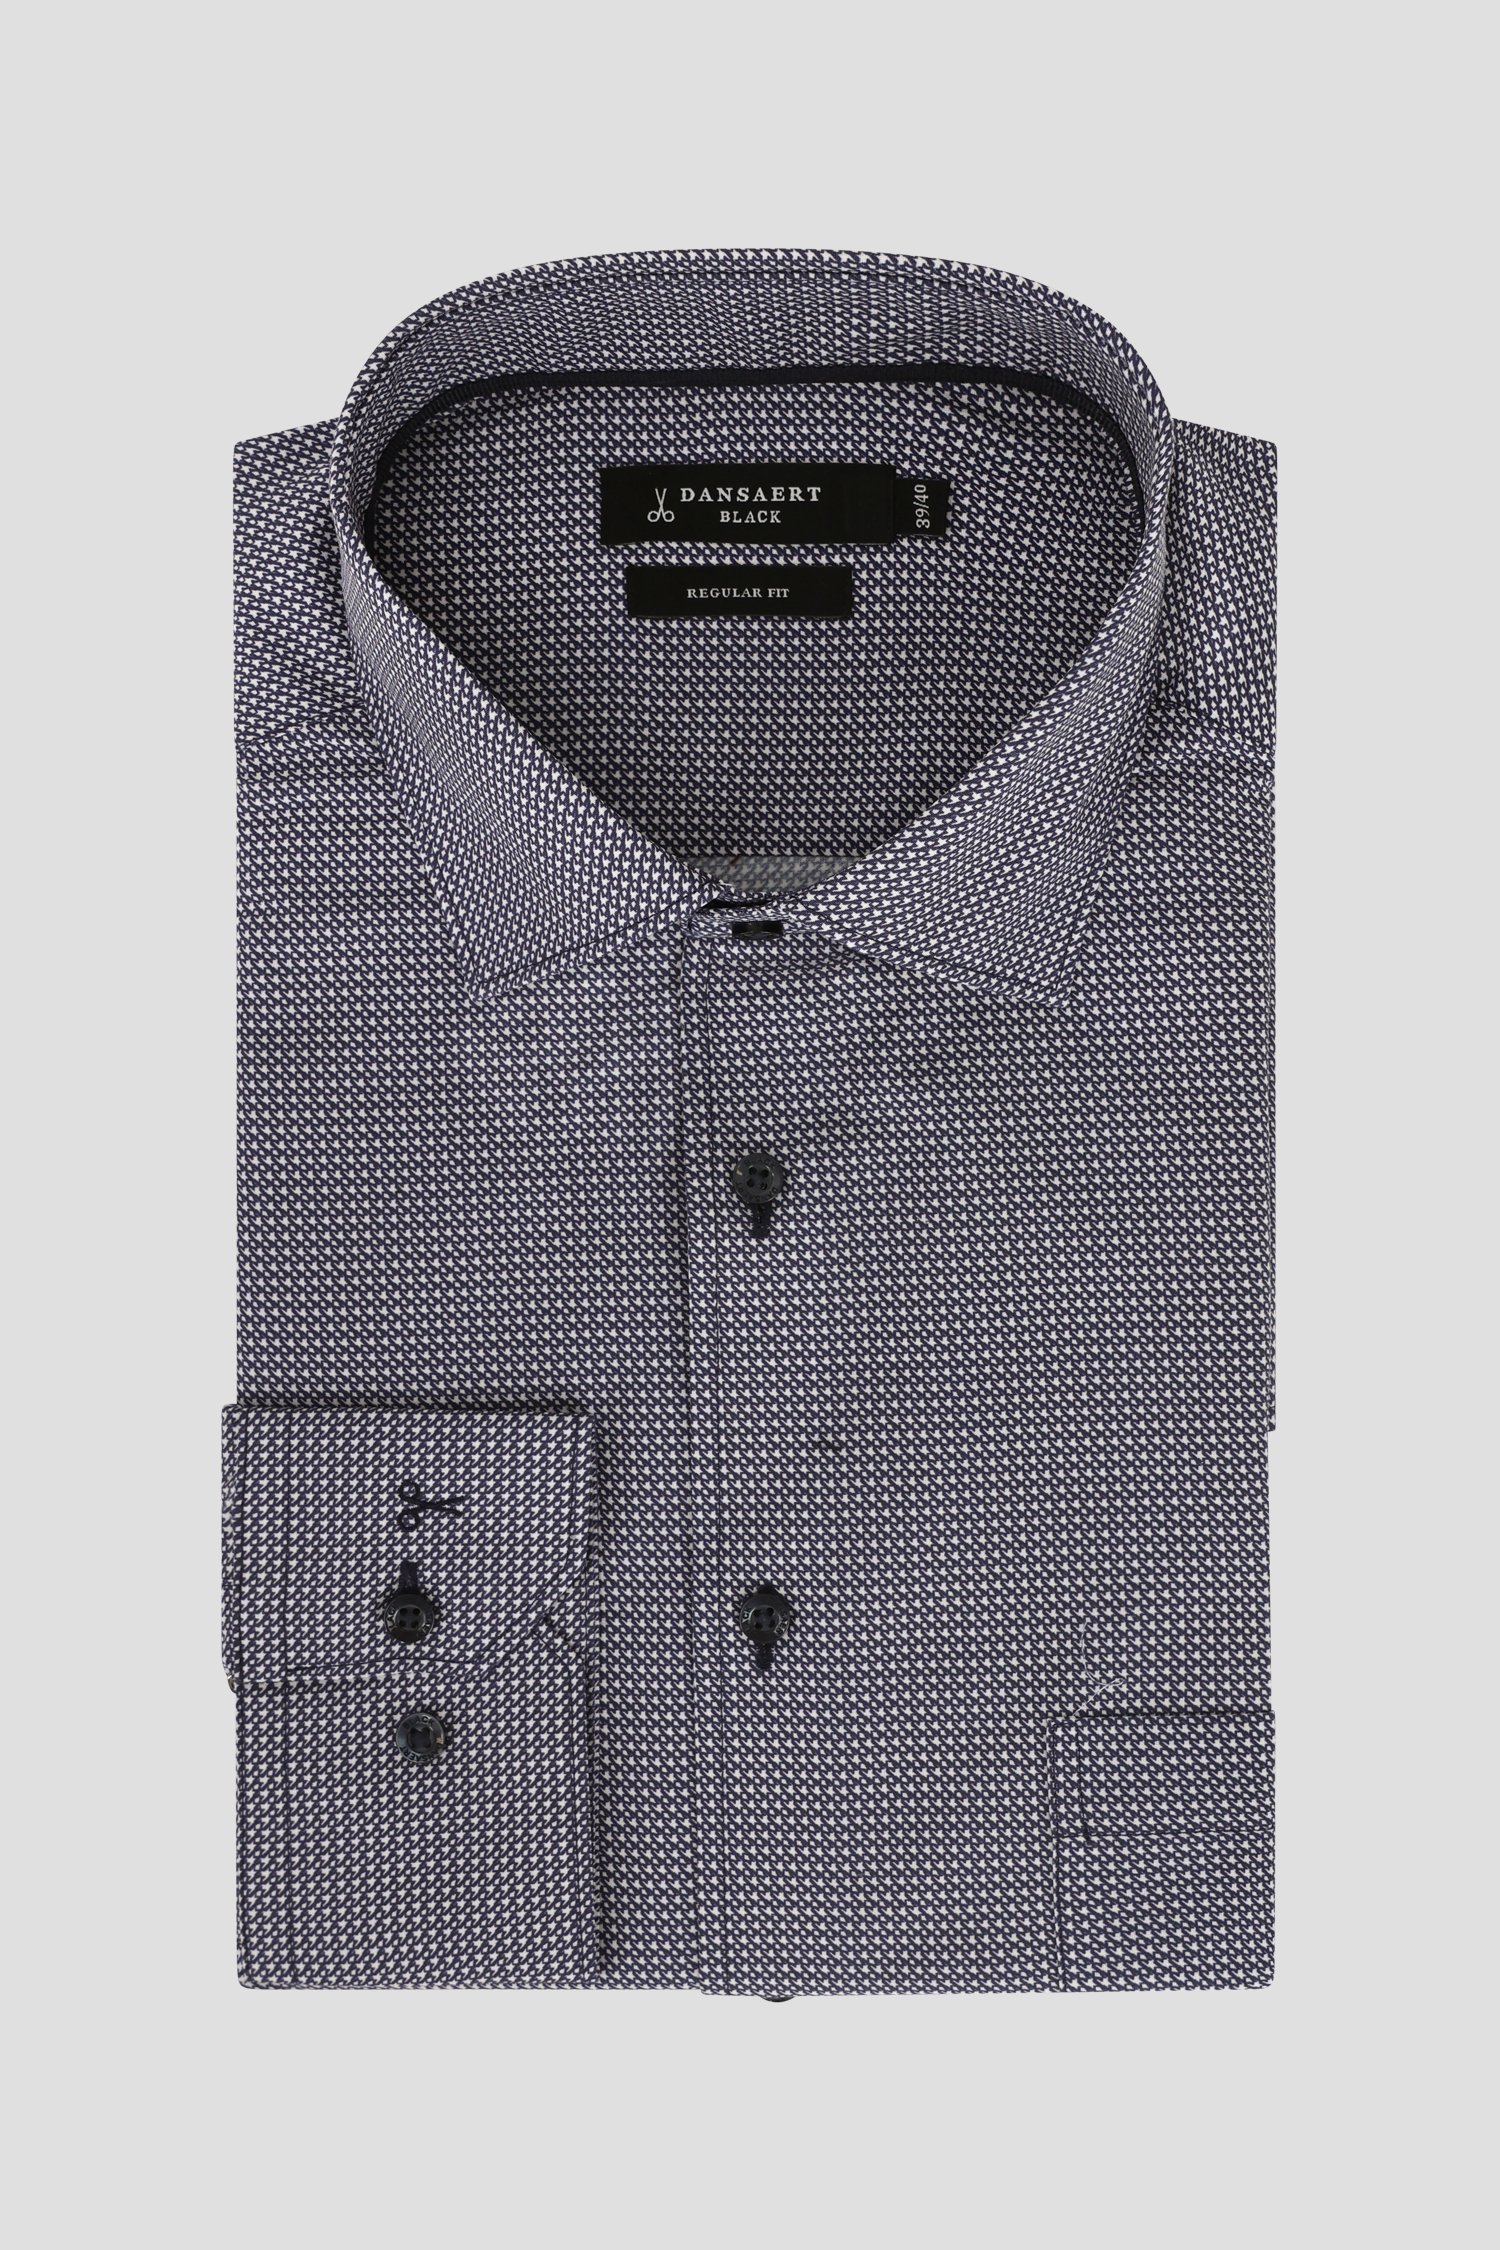 Donkerblauw hemd met ecru print - Regular fit van Dansaert Black voor Heren